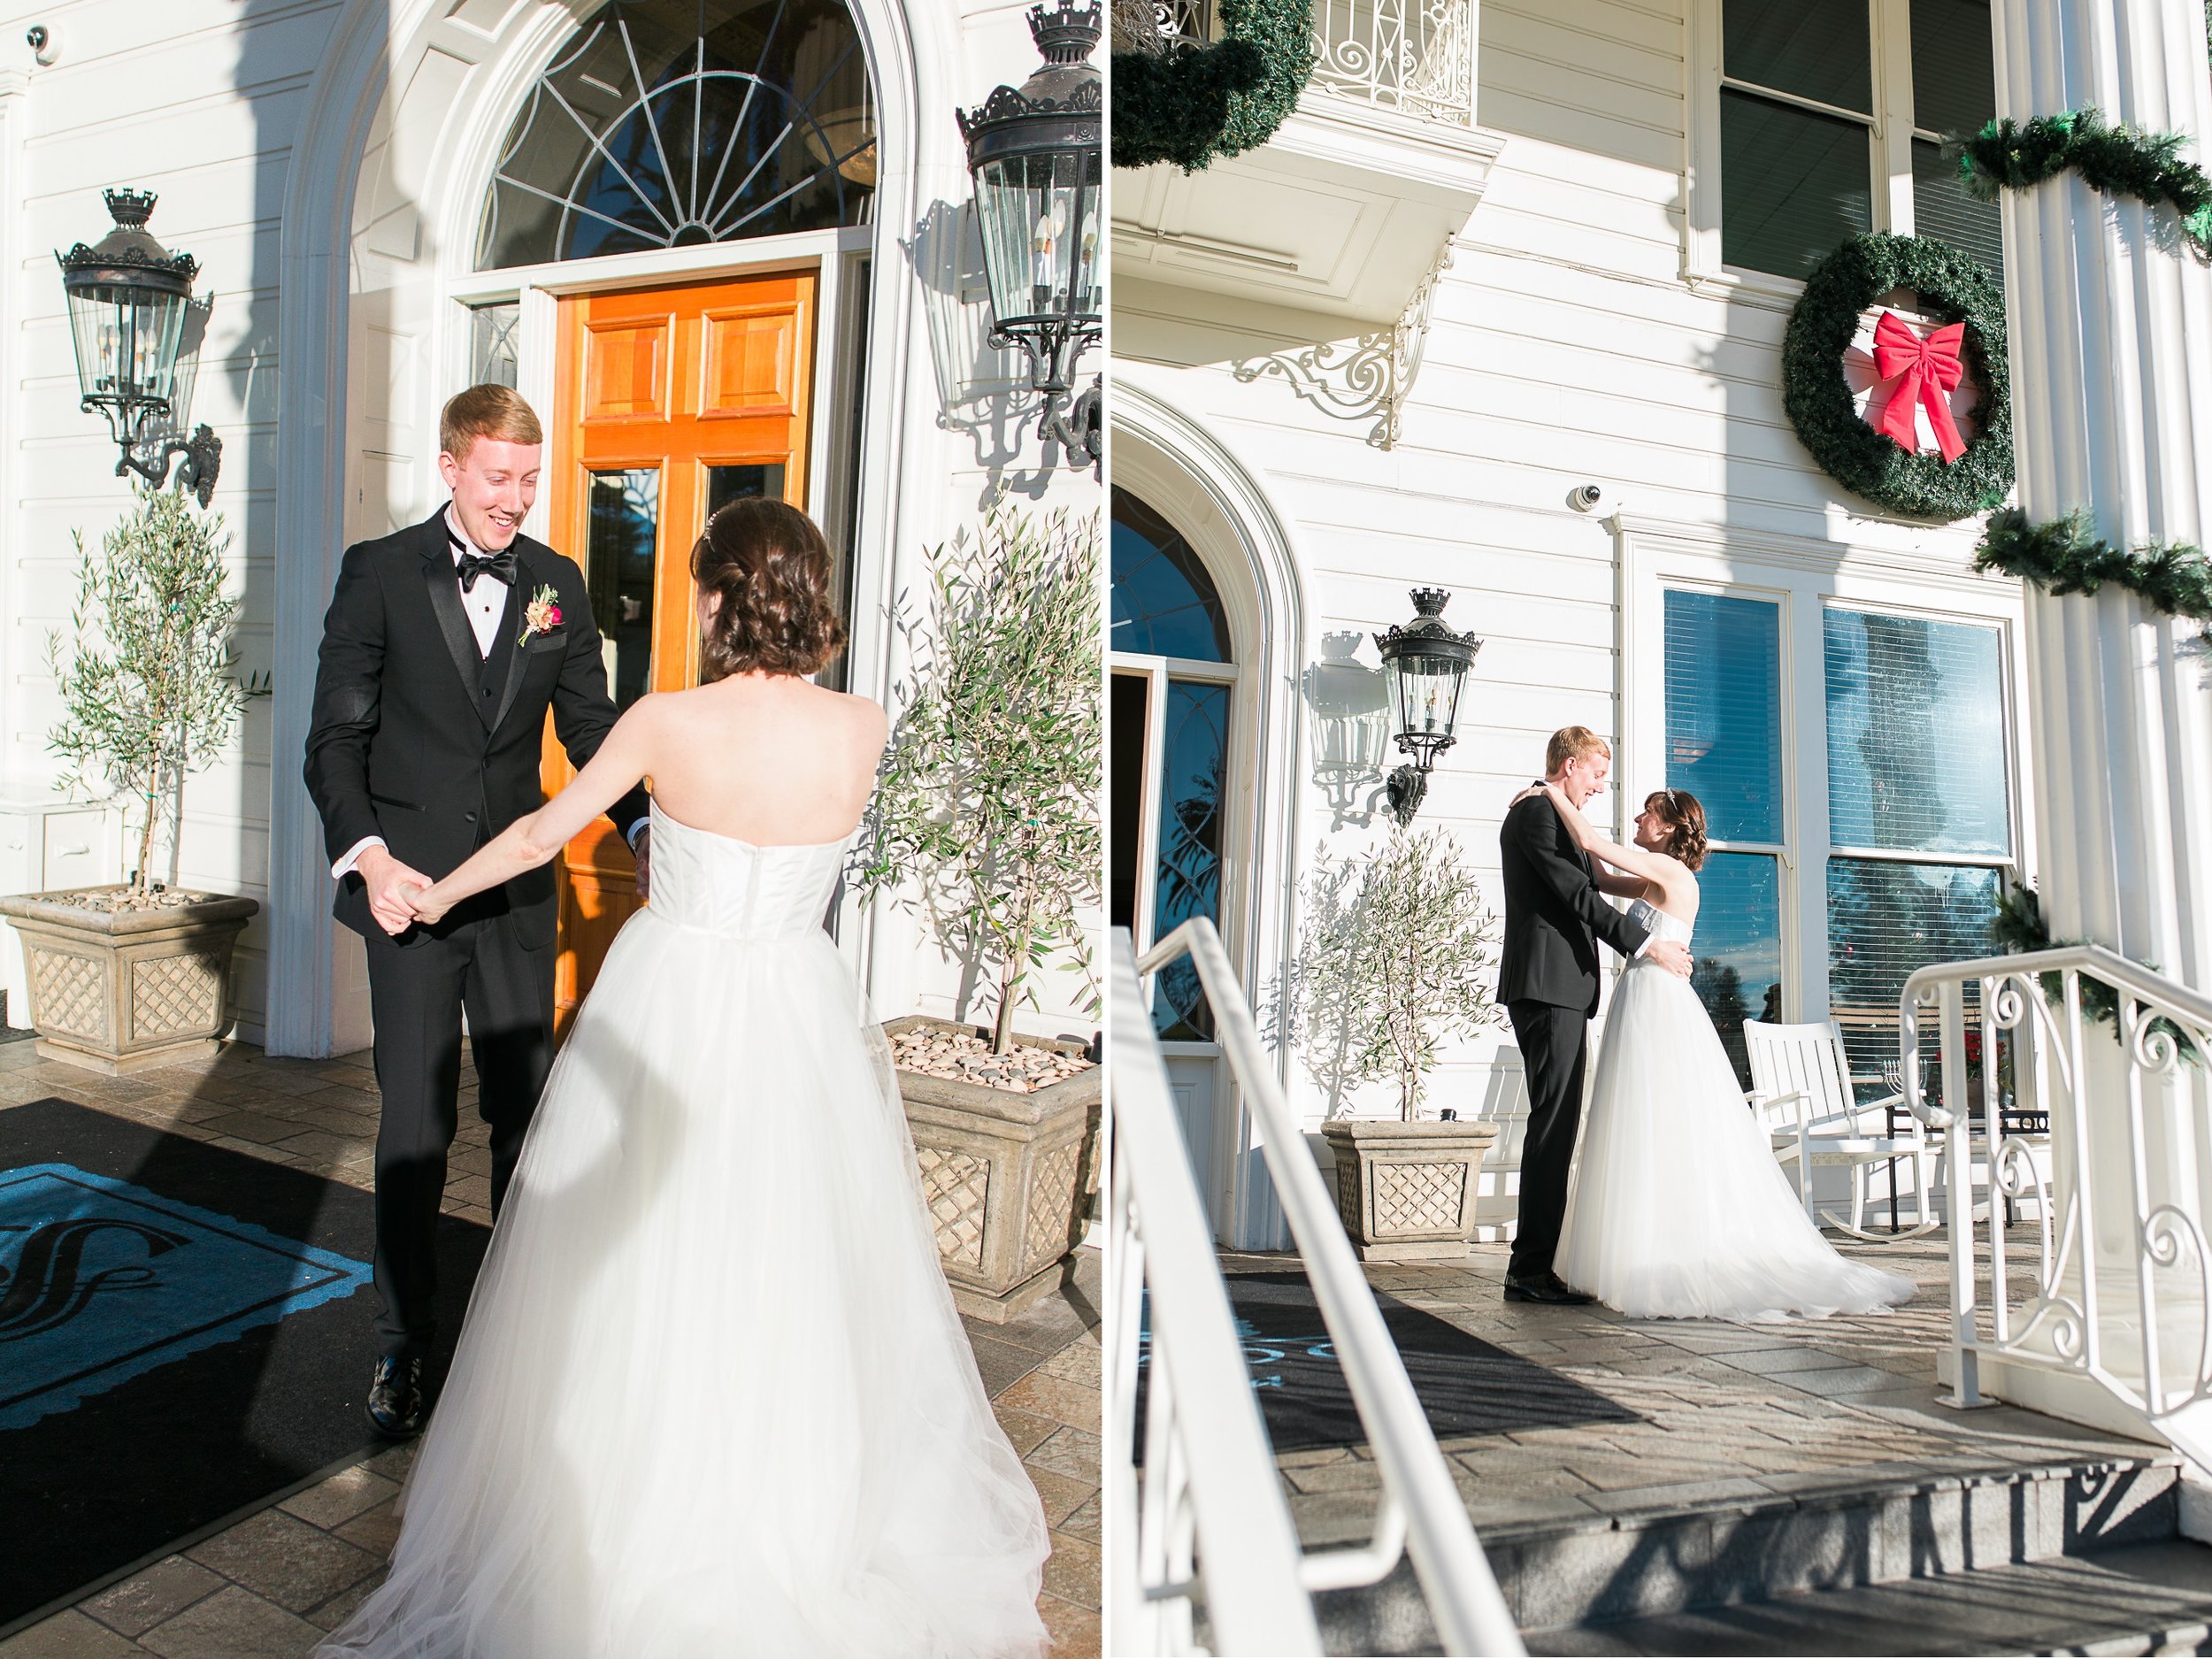 Silverado Wedding Photos - Napa Wedding Photographer - JBJ Pictures - Silverado Napa Winter Wedding (13).jpg